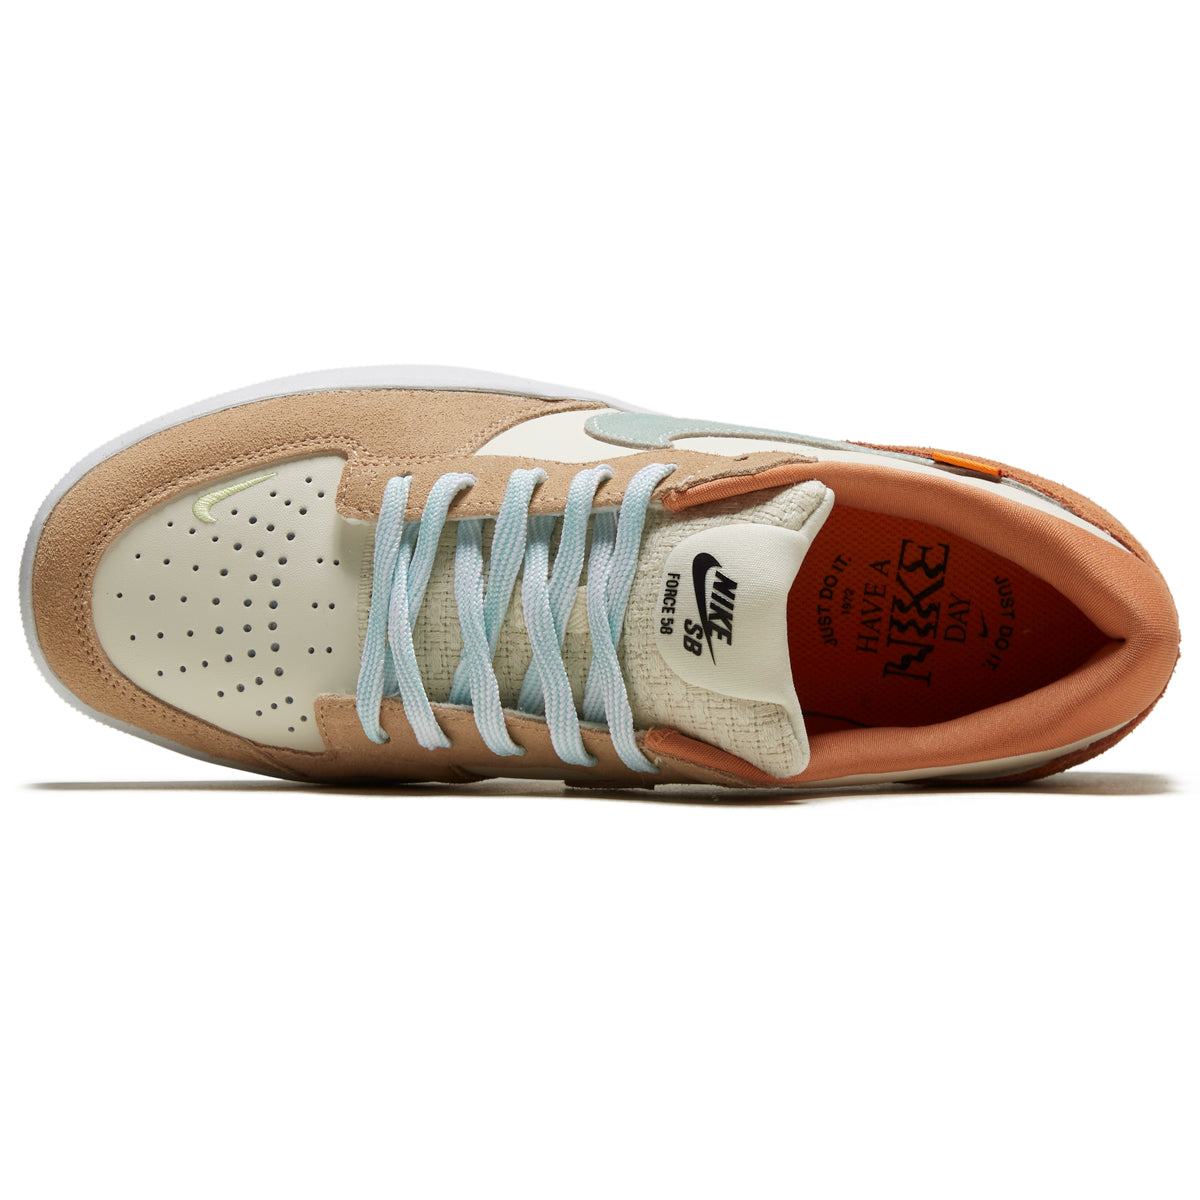 Nike SB Force 58 Shoes - Pale Ivory/Jade Ice/White/Hemp image 3